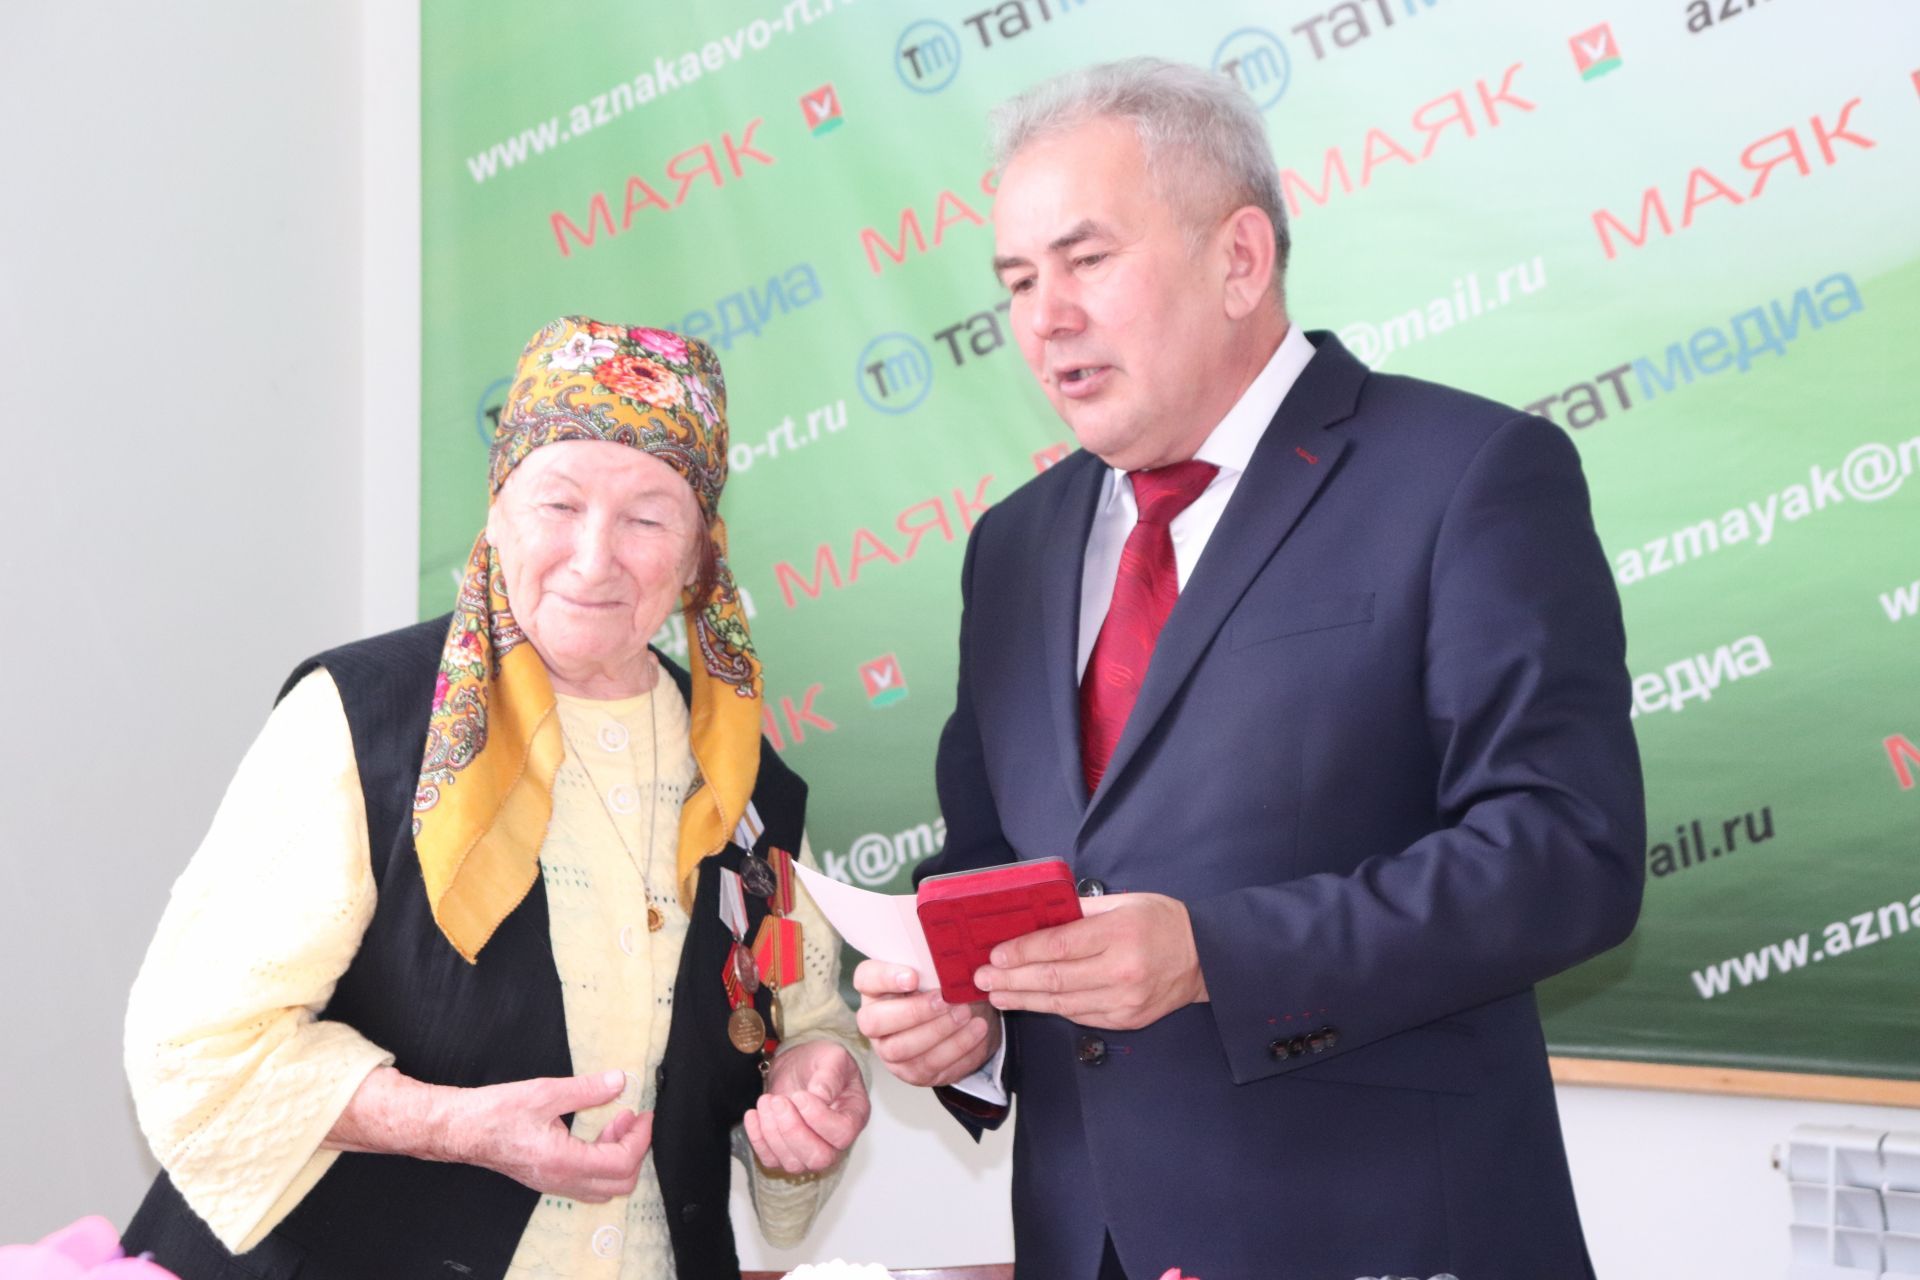 Руководители Азнакаево вручили медаль ветерану тыла